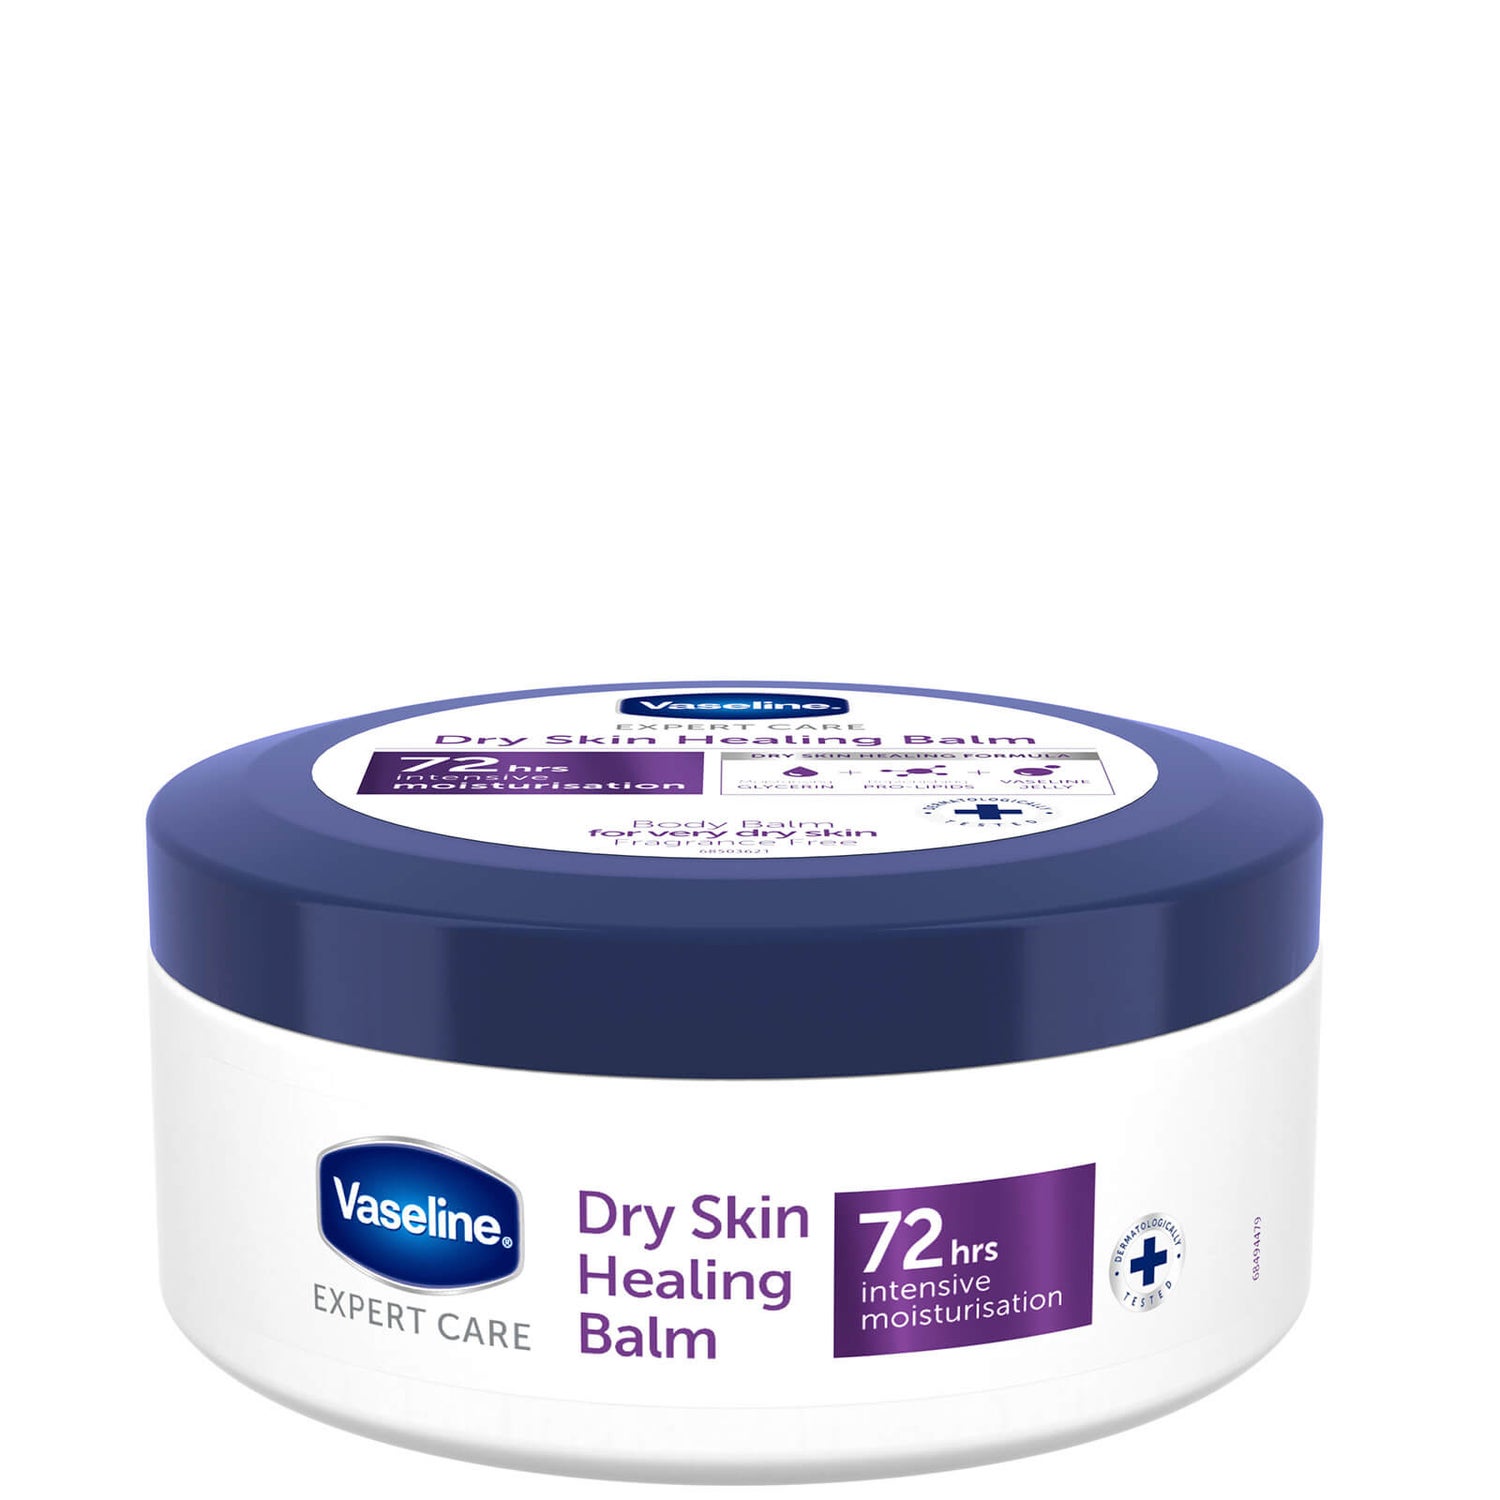 Balsamo Expert Care Dry Skin Healing Vaseline